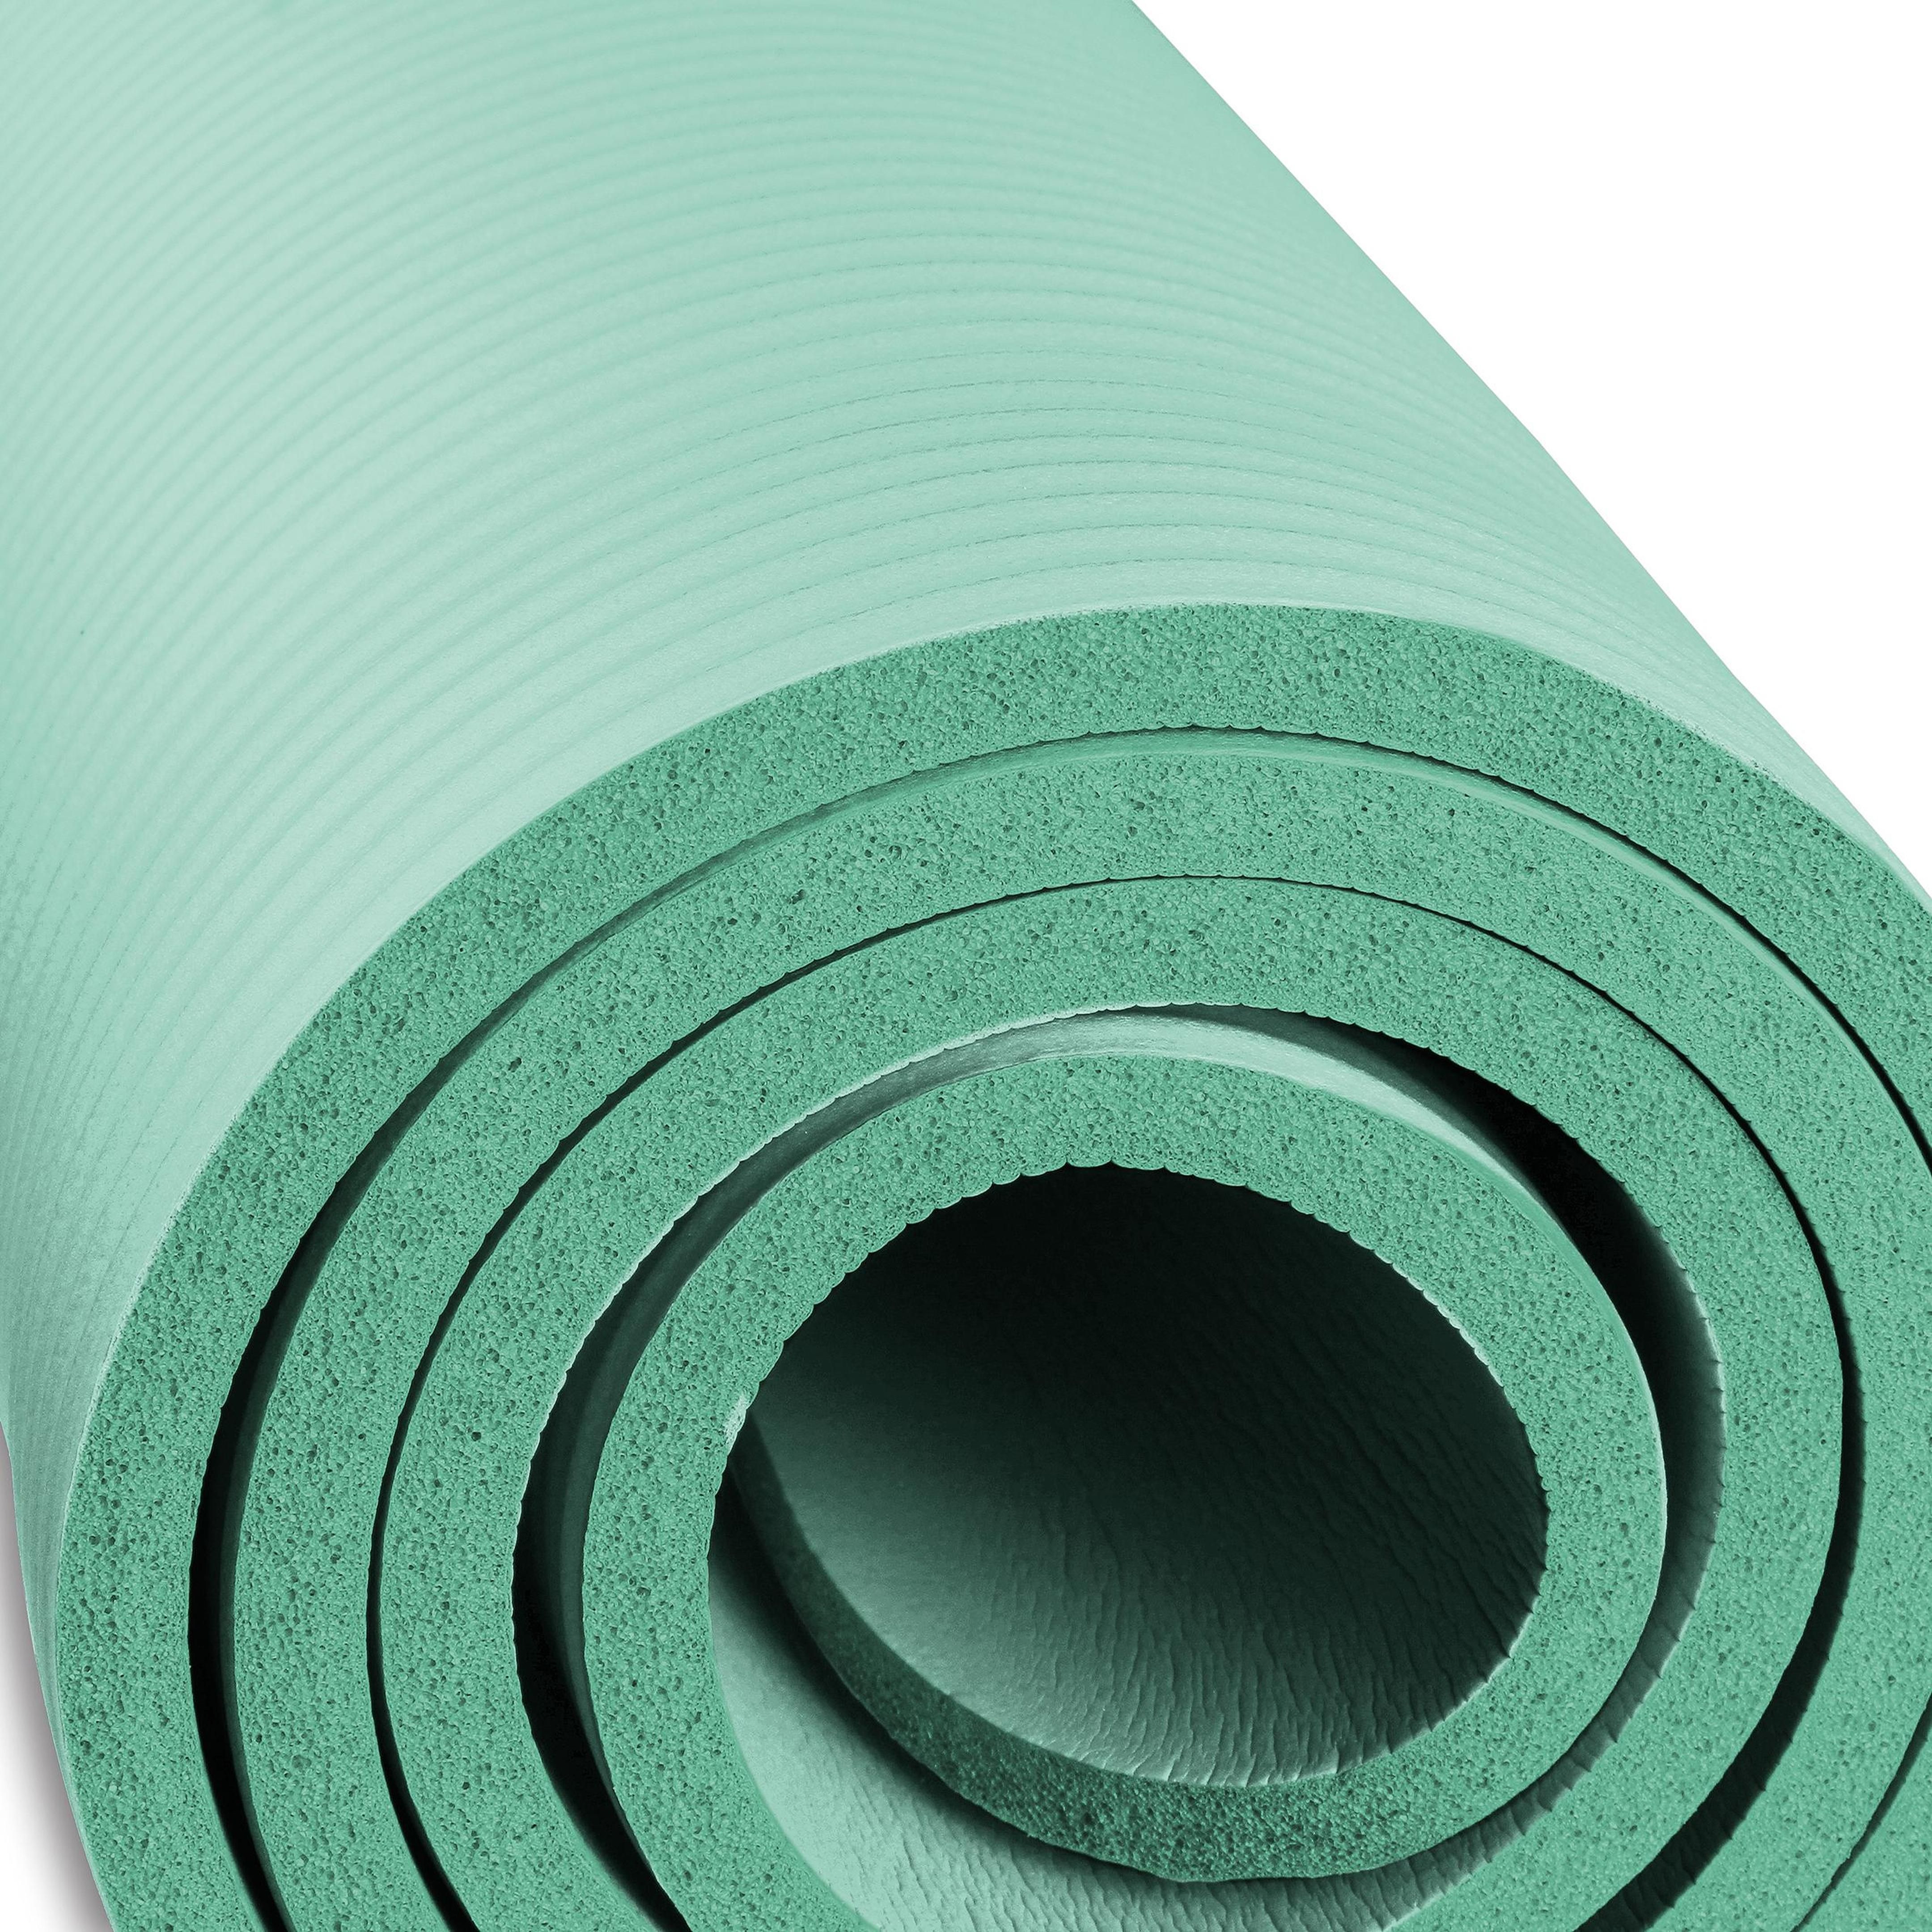 Esterilla de Yoga y Fitness NBR INDIGO 183 * 61 * 1,5 cm Verde Claro